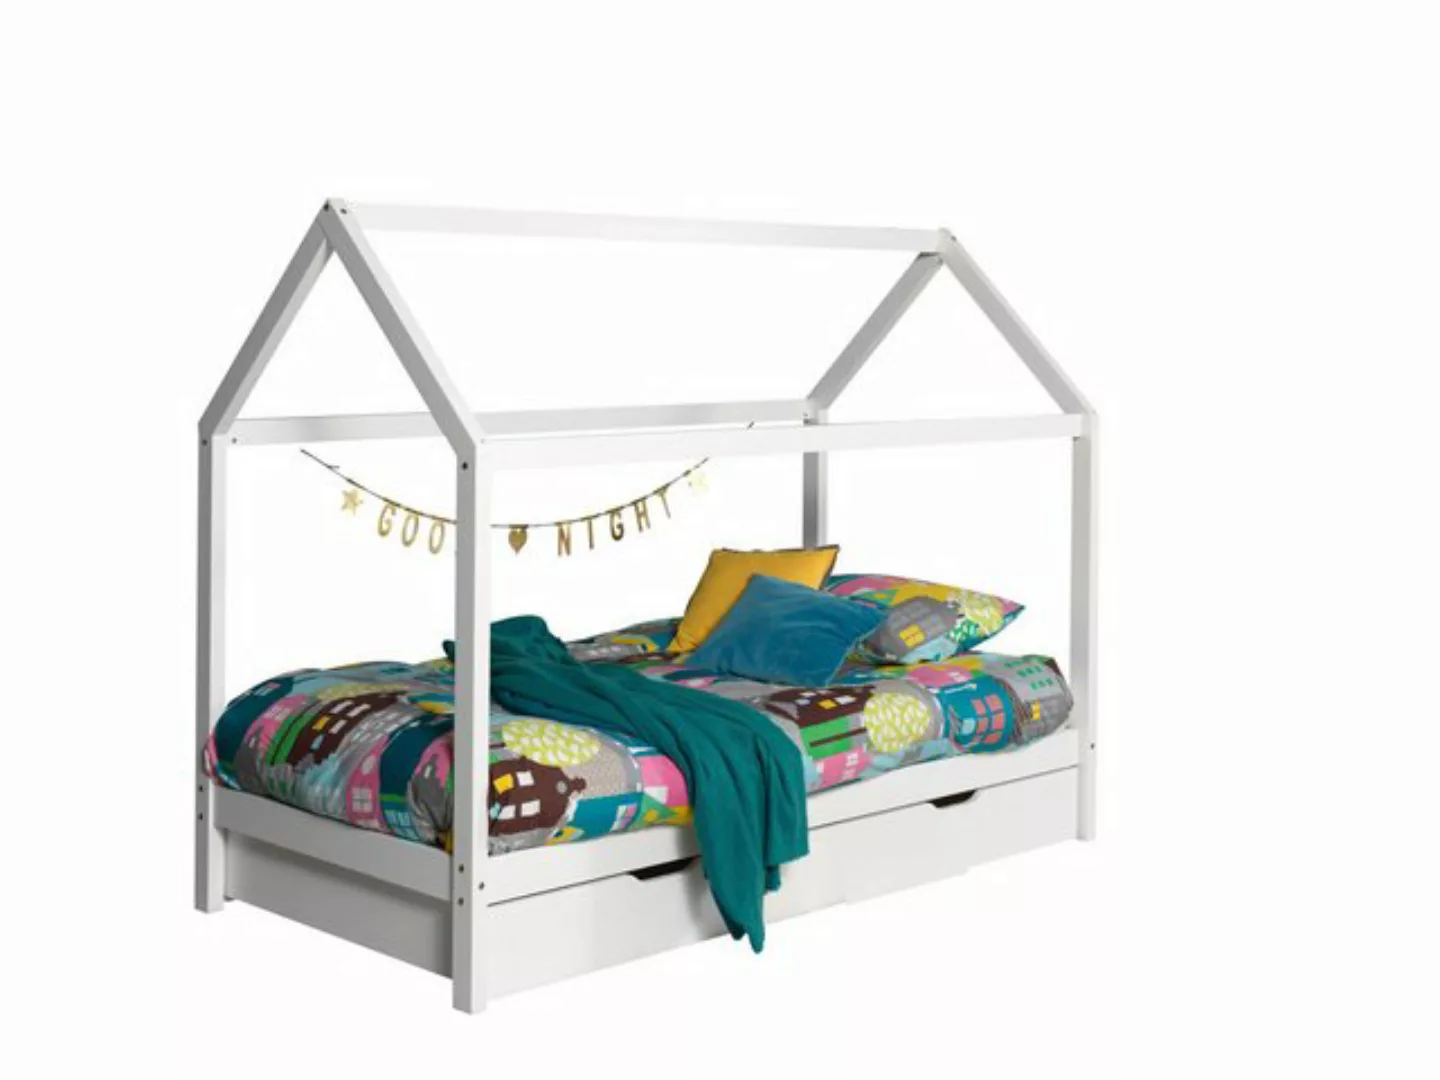 Vipack Hausbett Dallas (Made in Europe), Ein Hausbett in Massivholz mit Lat günstig online kaufen